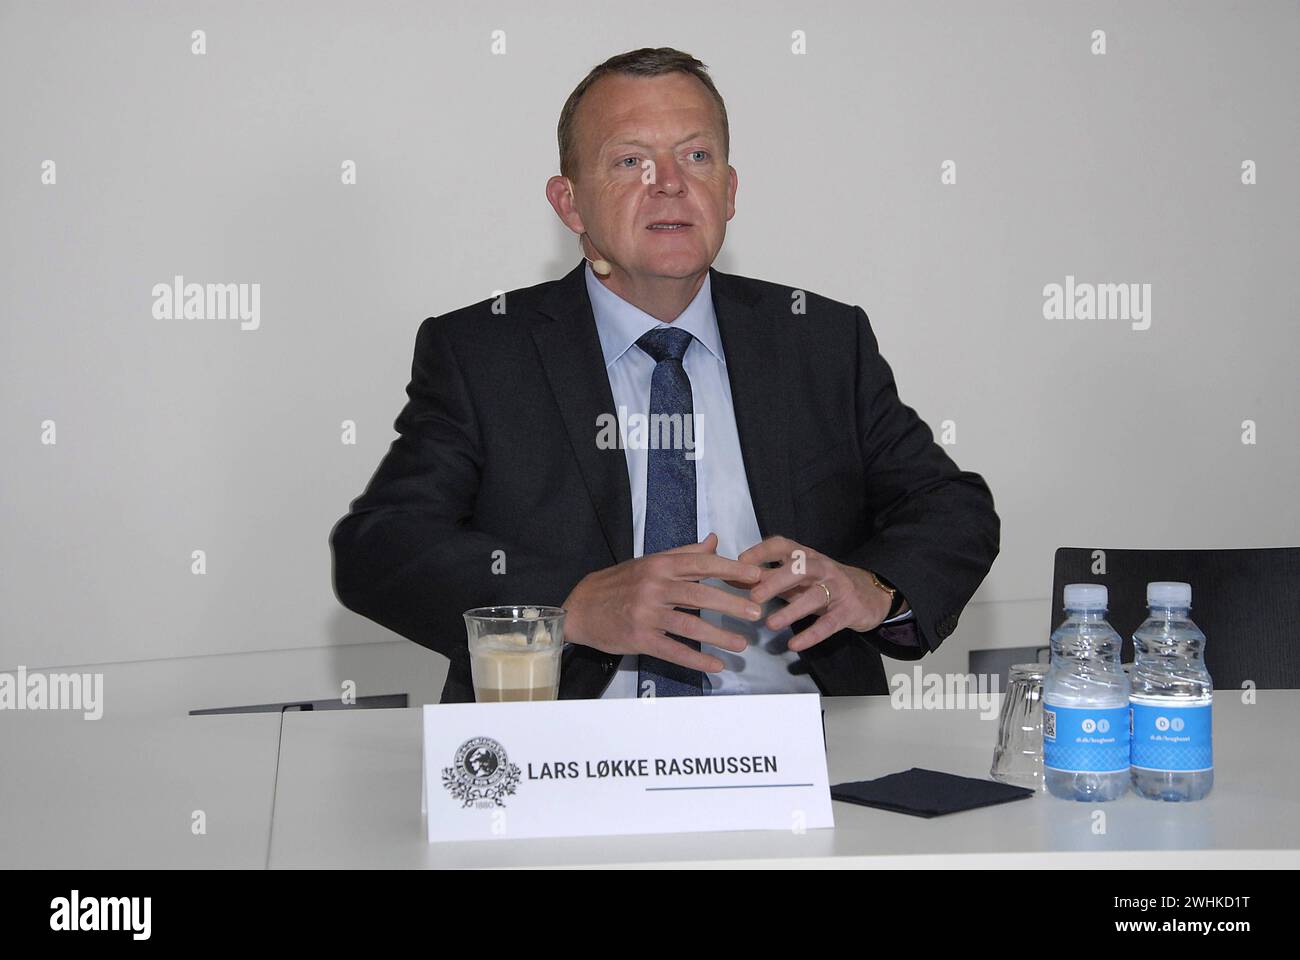 COPENAHGEN/DANIMARCA 19 giugno 2015  Lars Lokke Rasmussen, leader libderal e dell'opposizione, arriva al pranzo stampa del National Press Club dopo le serate elettorali Foto Stock